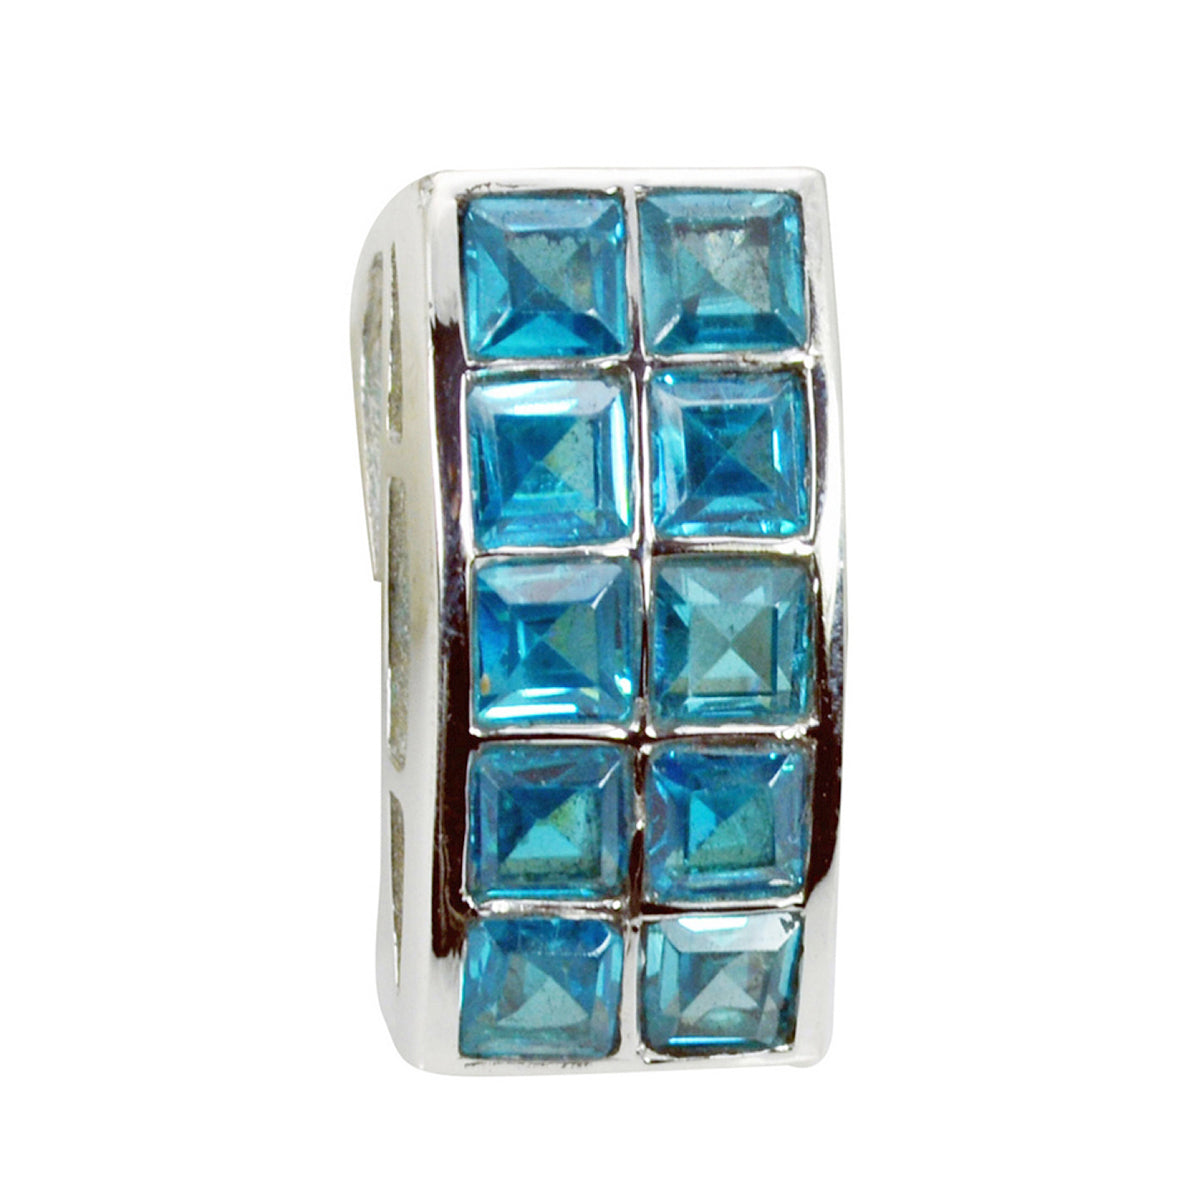 riyo splendide gemme quadrate sfaccettate con topazio azzurro azzurro, ciondolo in argento massiccio, regalo per il matrimonio